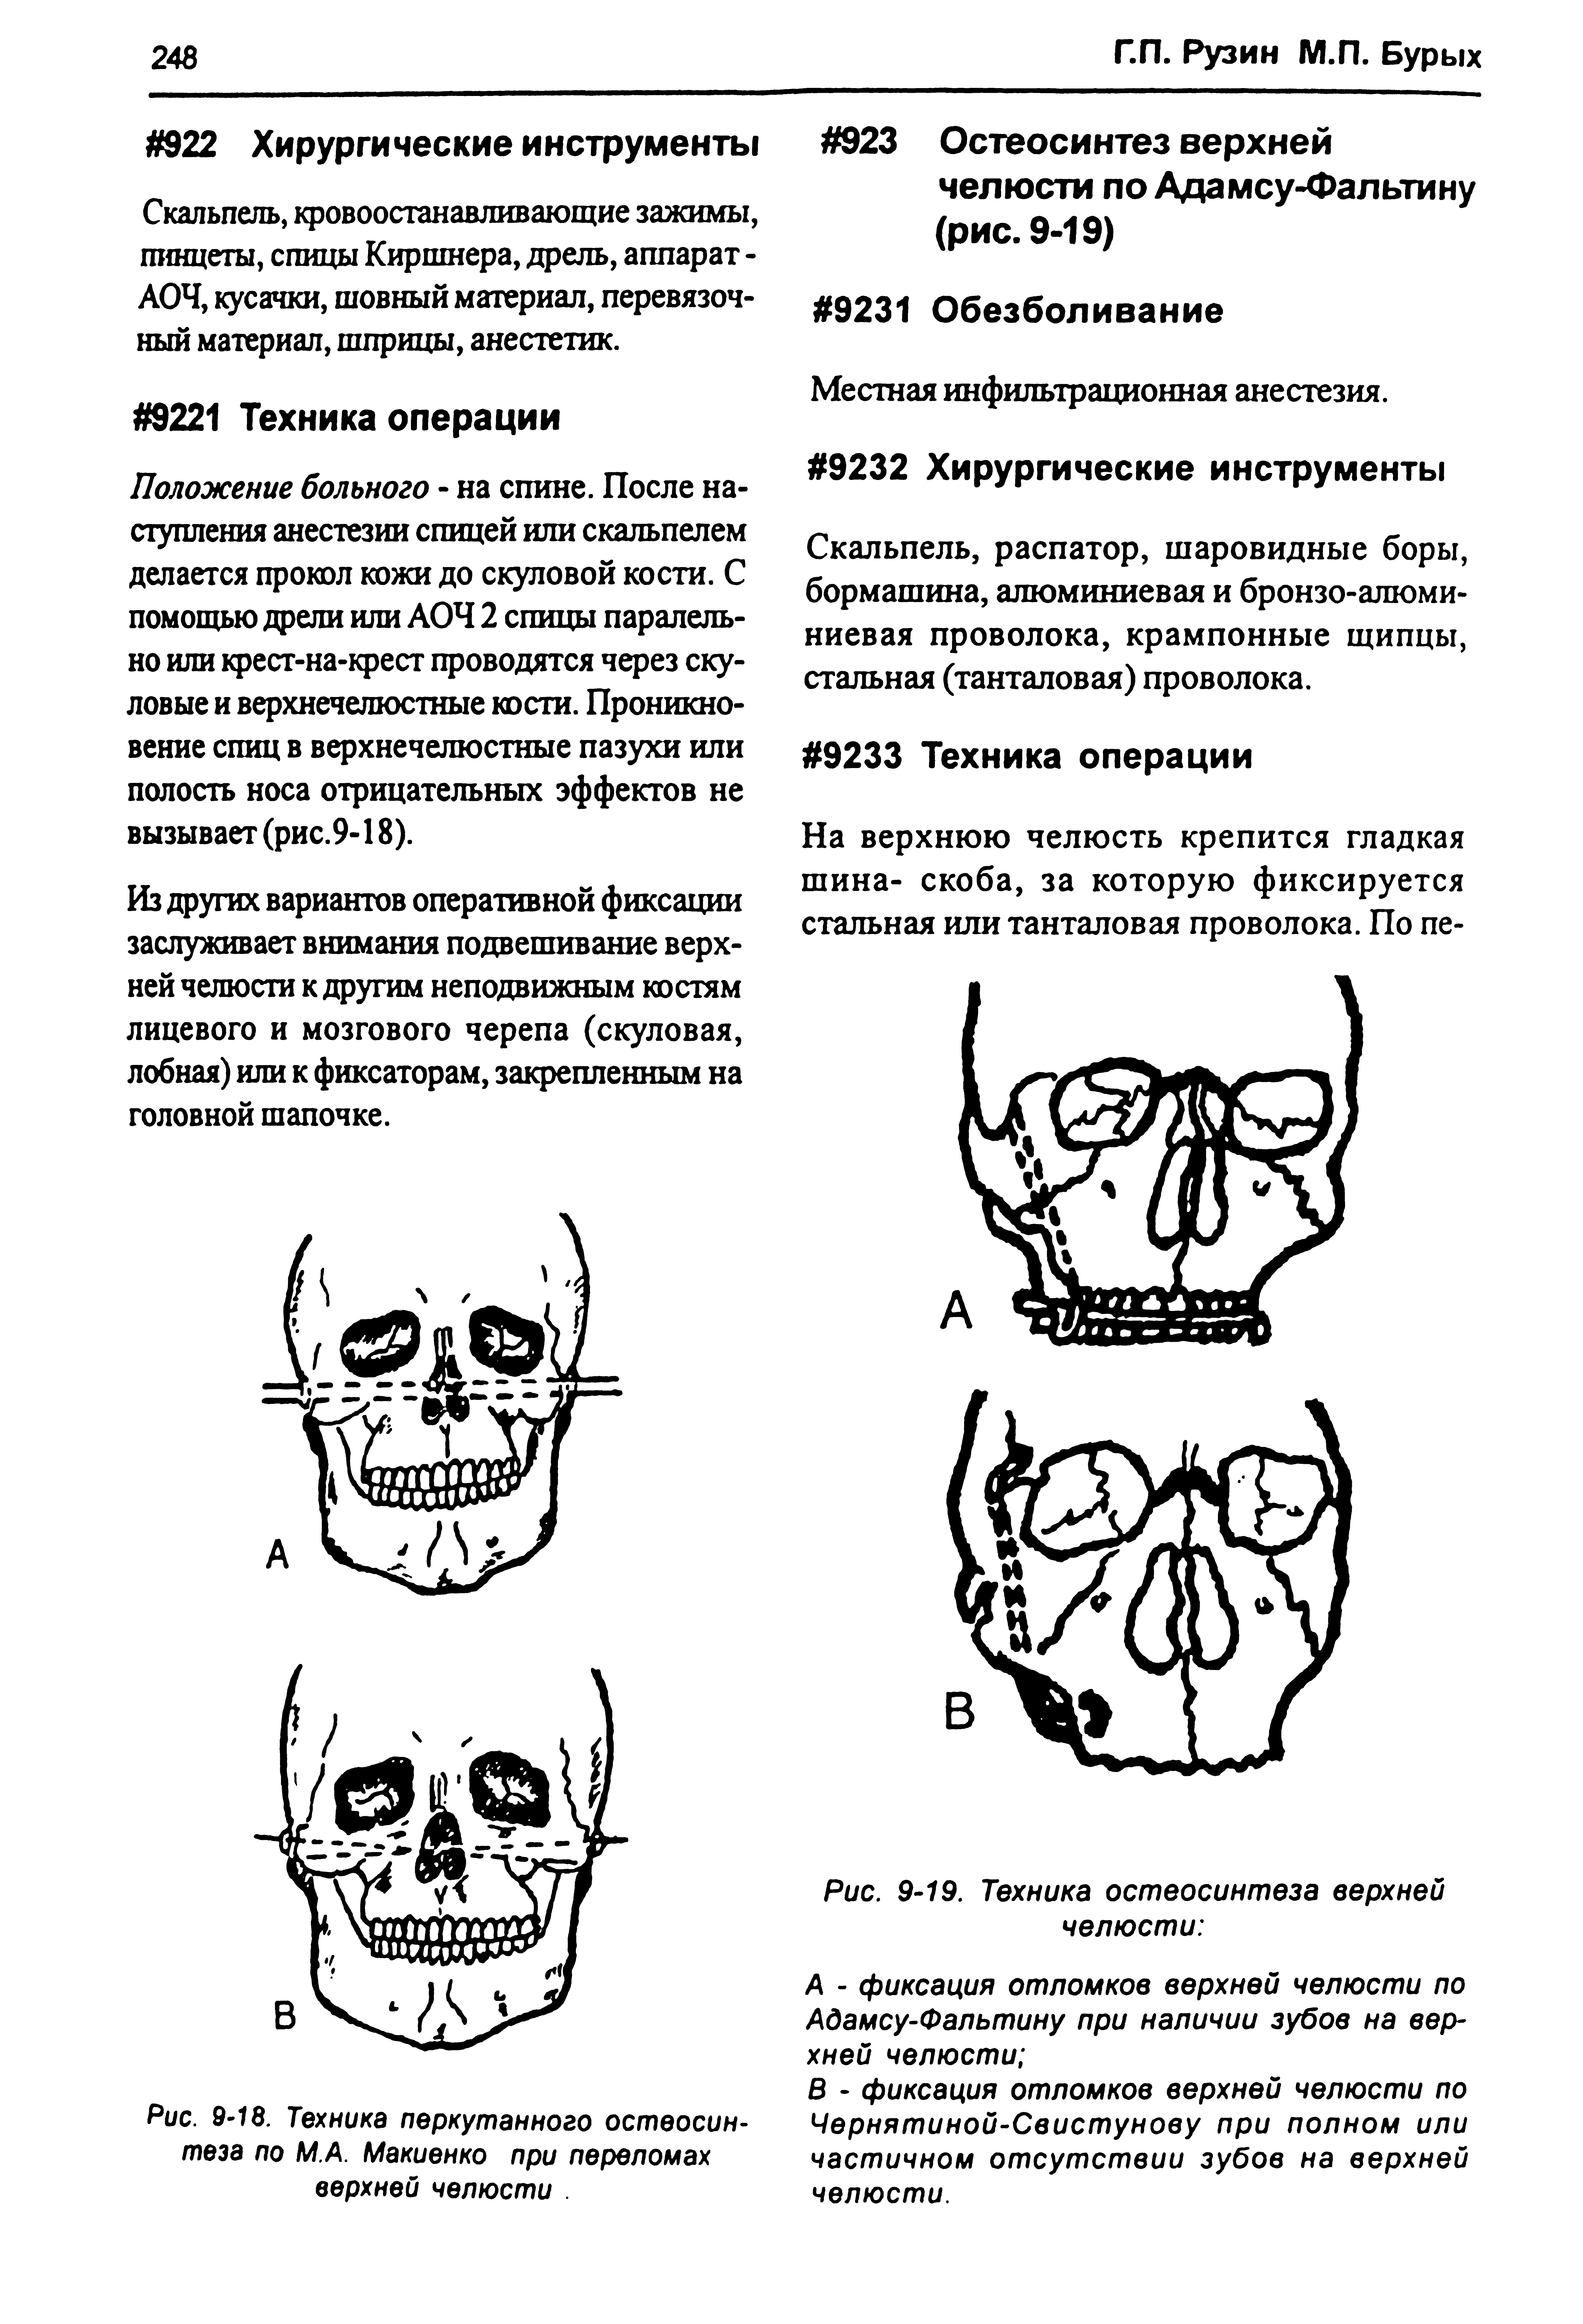 Рис. 9-18. Техника перкутанного остеосинтеза по М.А. Макиенко при переломах верхней челюсти. ...